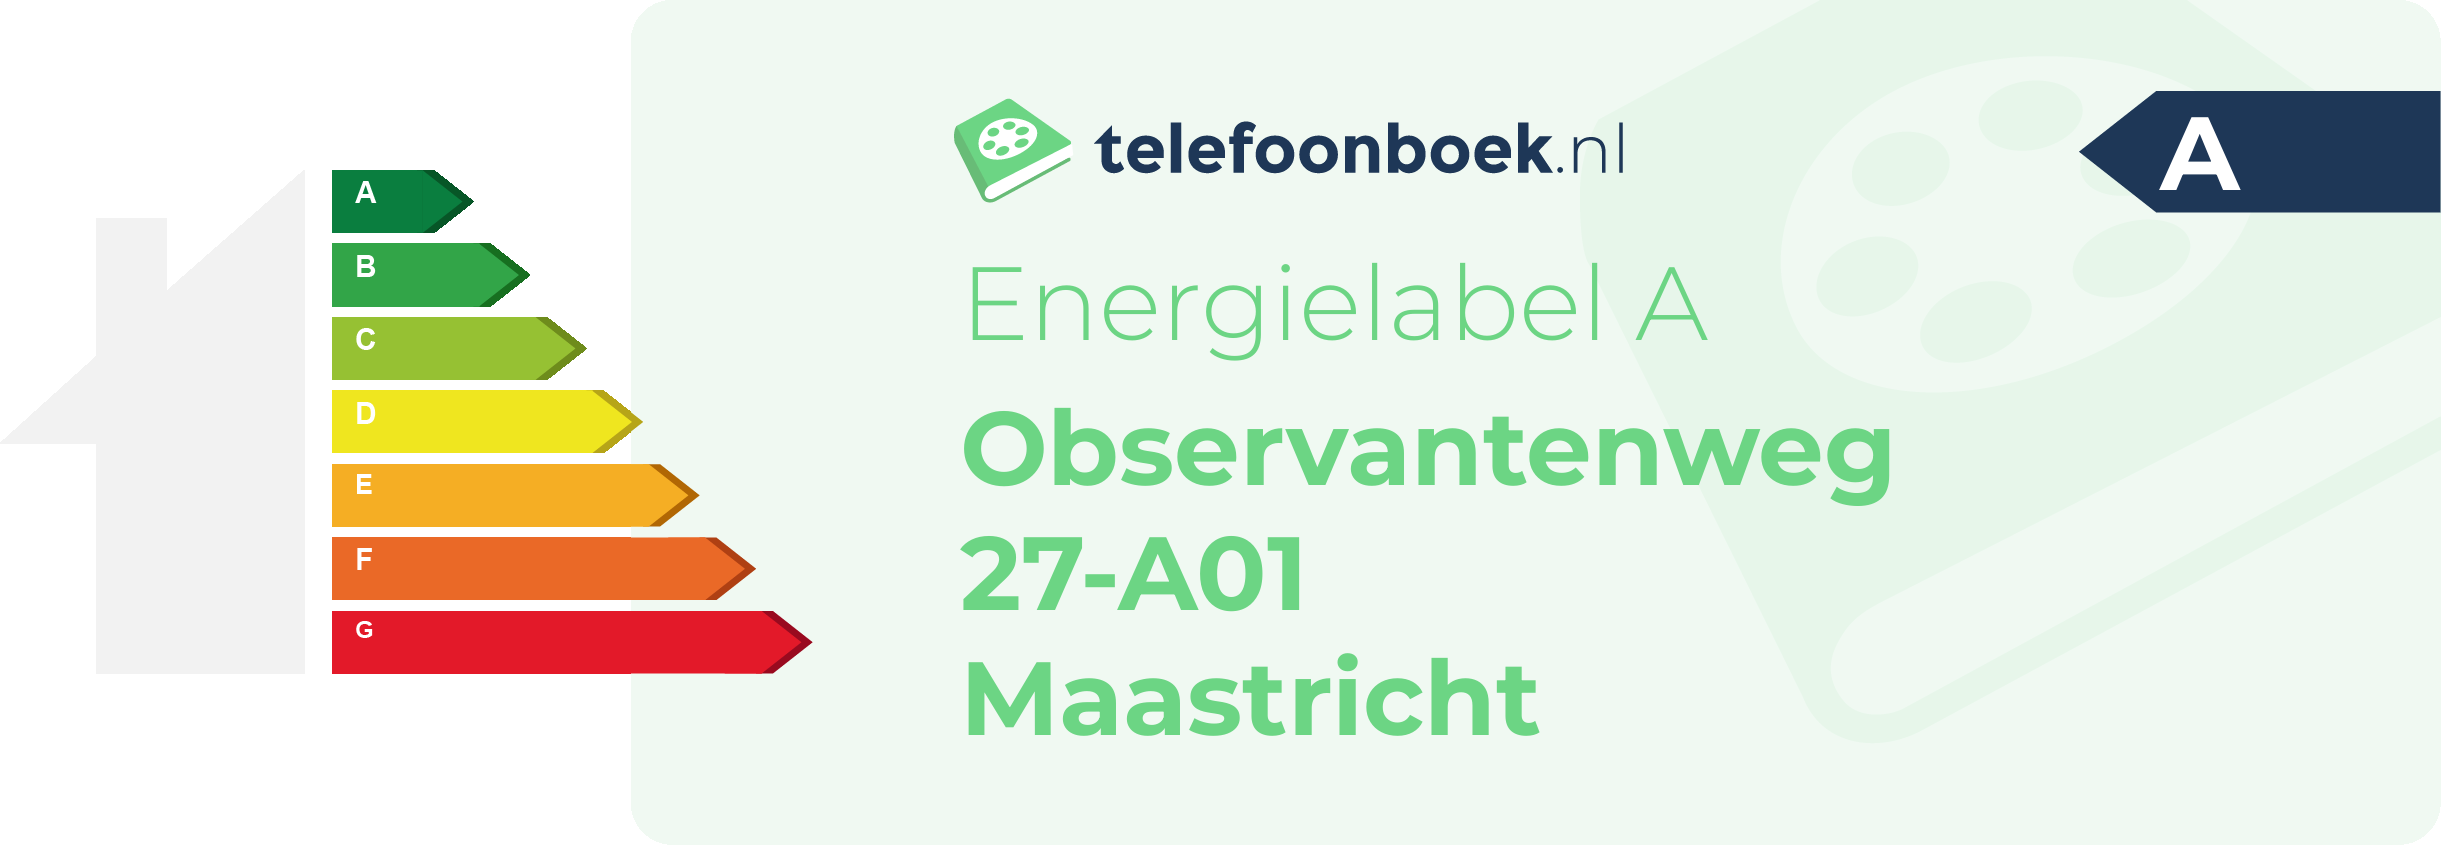 Energielabel Observantenweg 27-A01 Maastricht